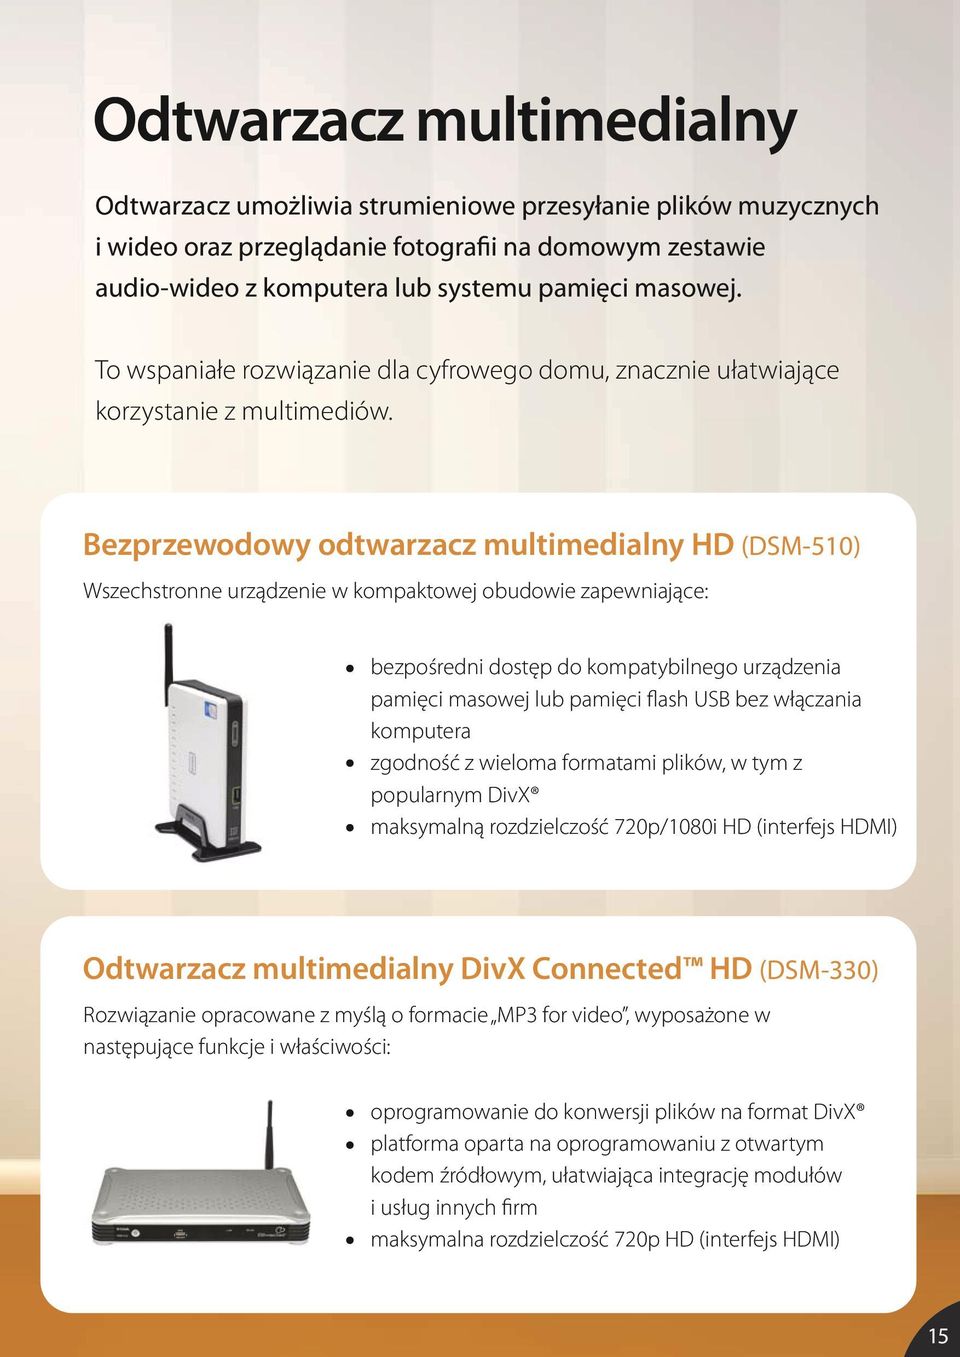 Bezprzewodowy odtwarzacz multimedialny HD (DSM-510) Wszechstronne urządzenie w kompaktowej obudowie zapewniające: bezpośredni dostęp do kompatybilnego urządzenia pamięci masowej lub pamięci flash USB